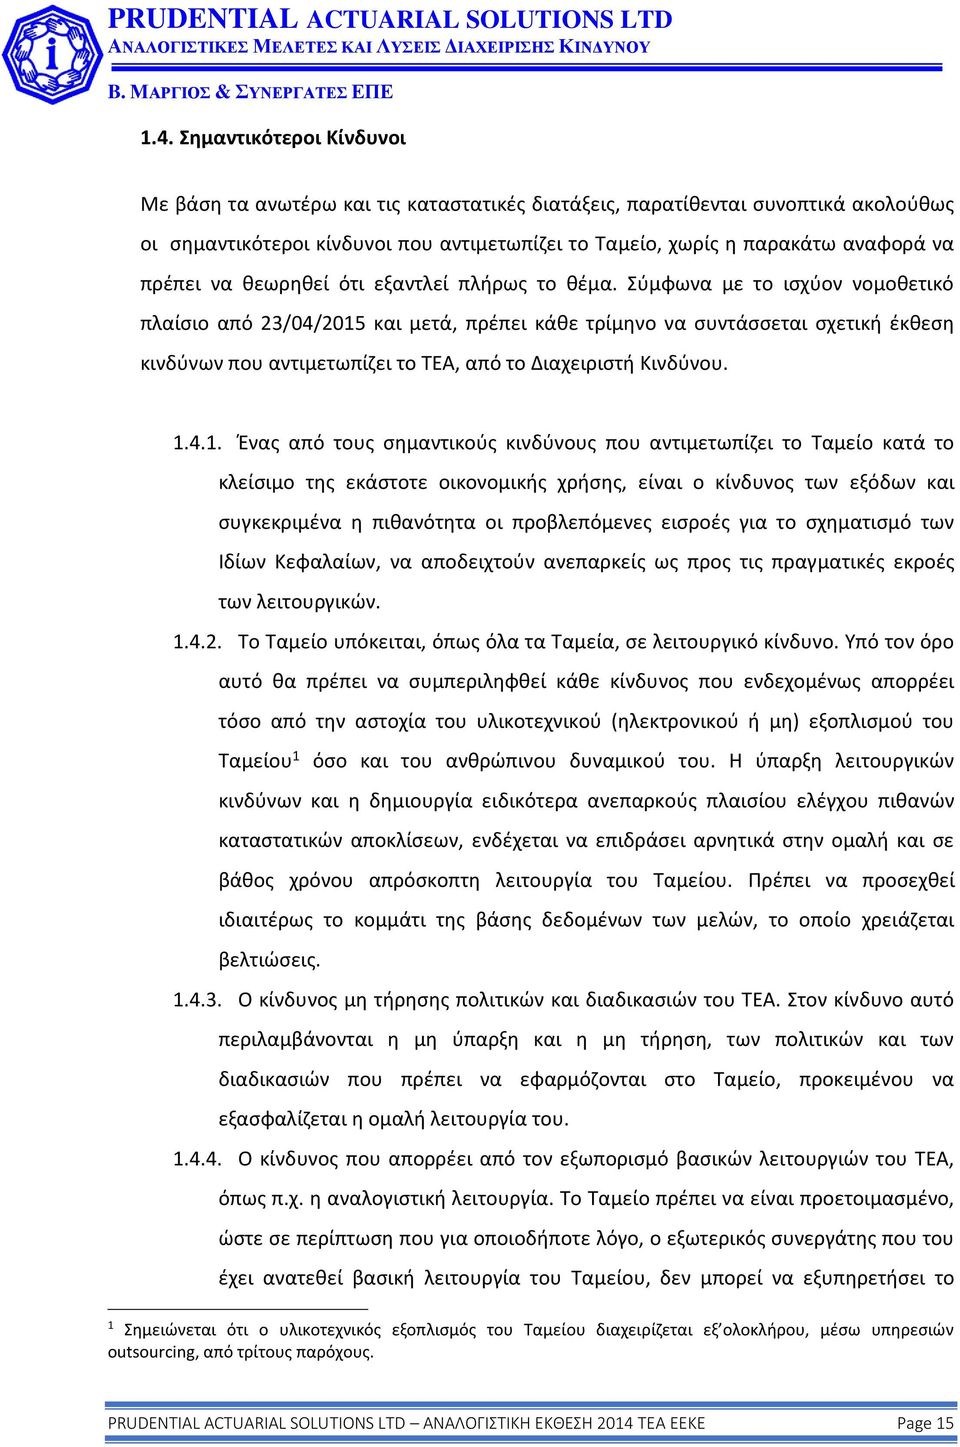 Σύμφωνα με το ισχύον νομοθετικό πλαίσιο από 23/04/2015